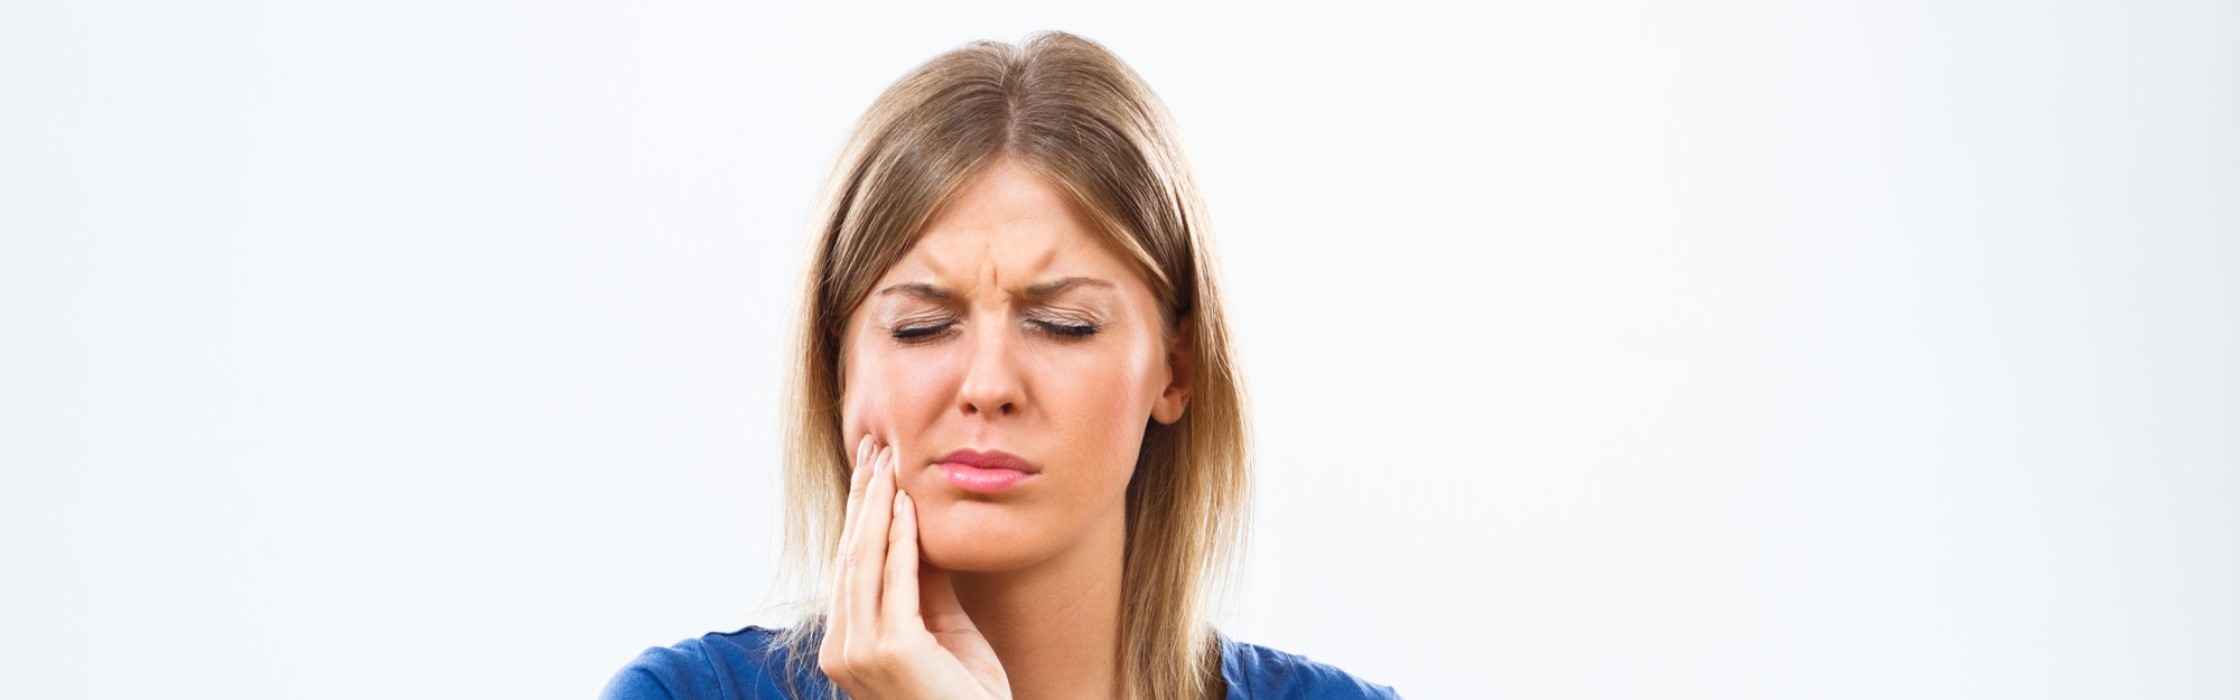 Abszess am Zahnfleisch: Symptome und Behandlung